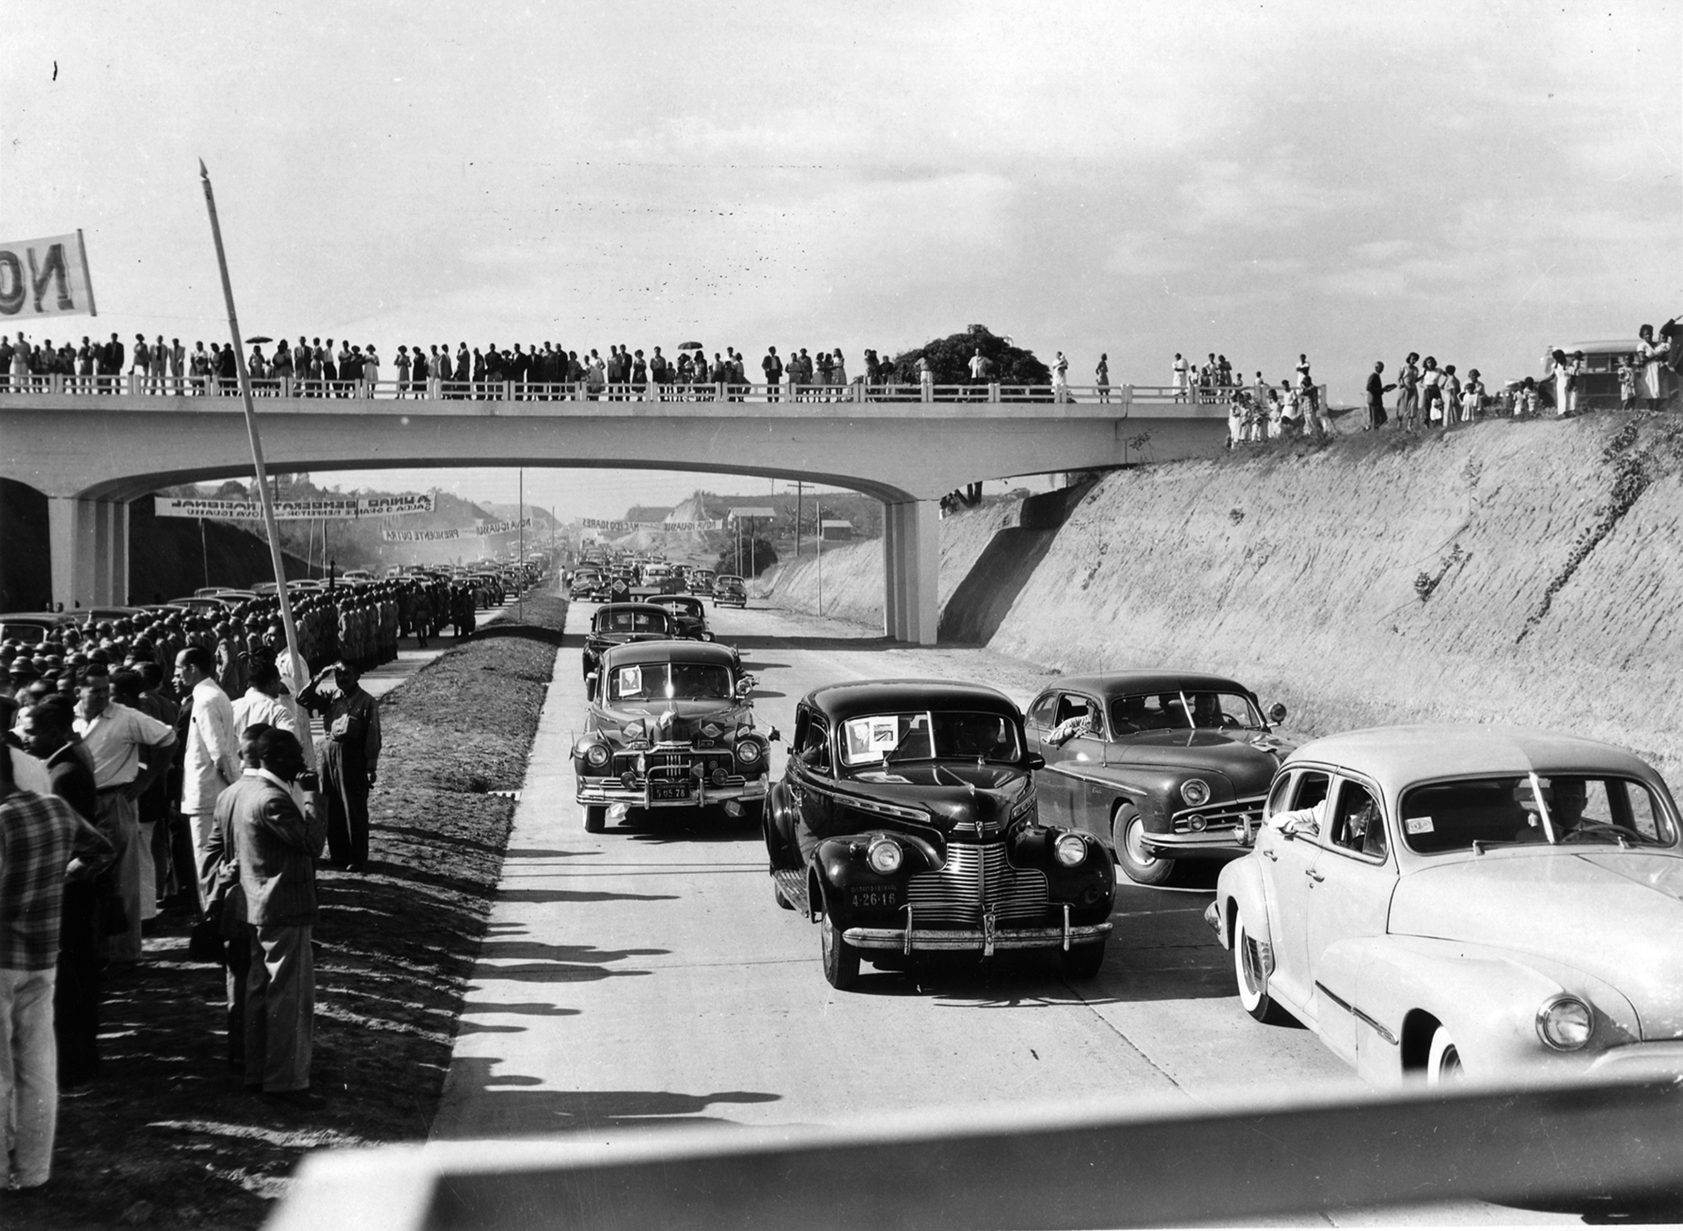 Fotografia em preto e branco. Carros trafegando em uma via com um viaduto ao fundo. Há muitas pessoas na lateral da via e em cima do viaduto observando os carros.